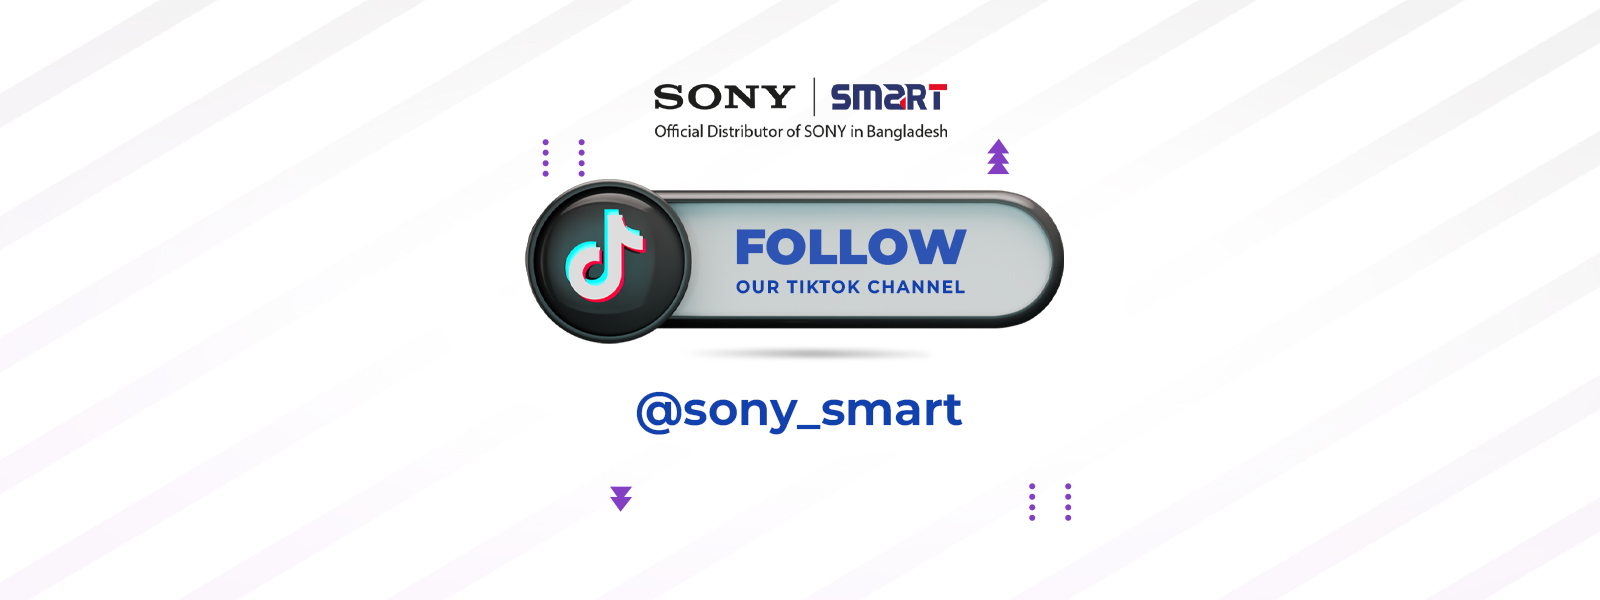 Sony-Smart promo